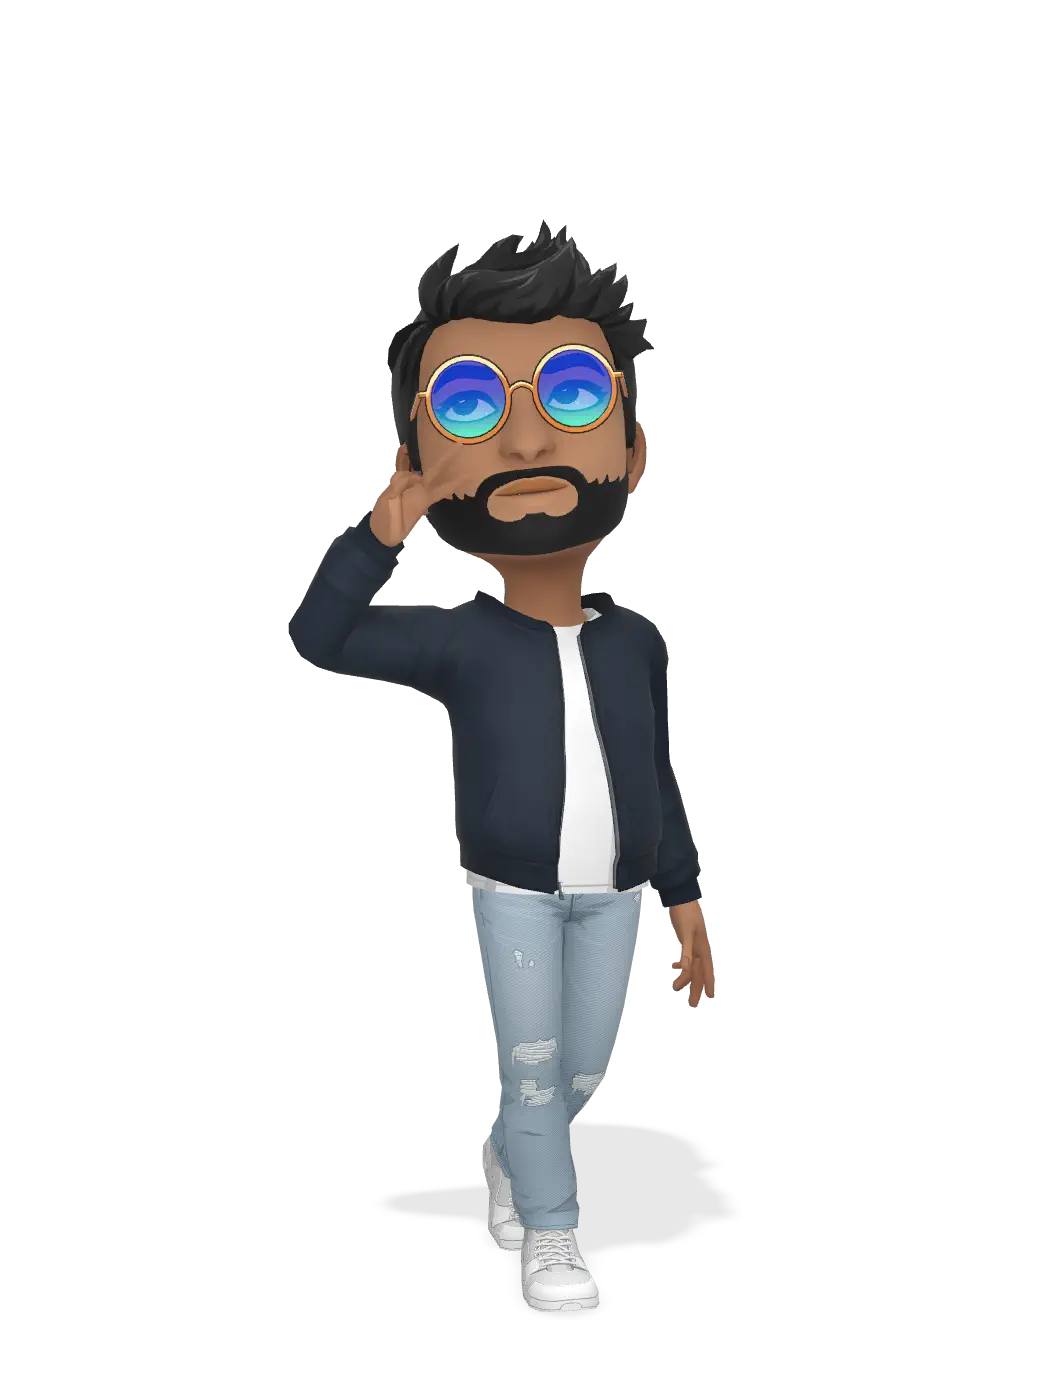 3D Bitmoji for ritvikreddy2001 avatar